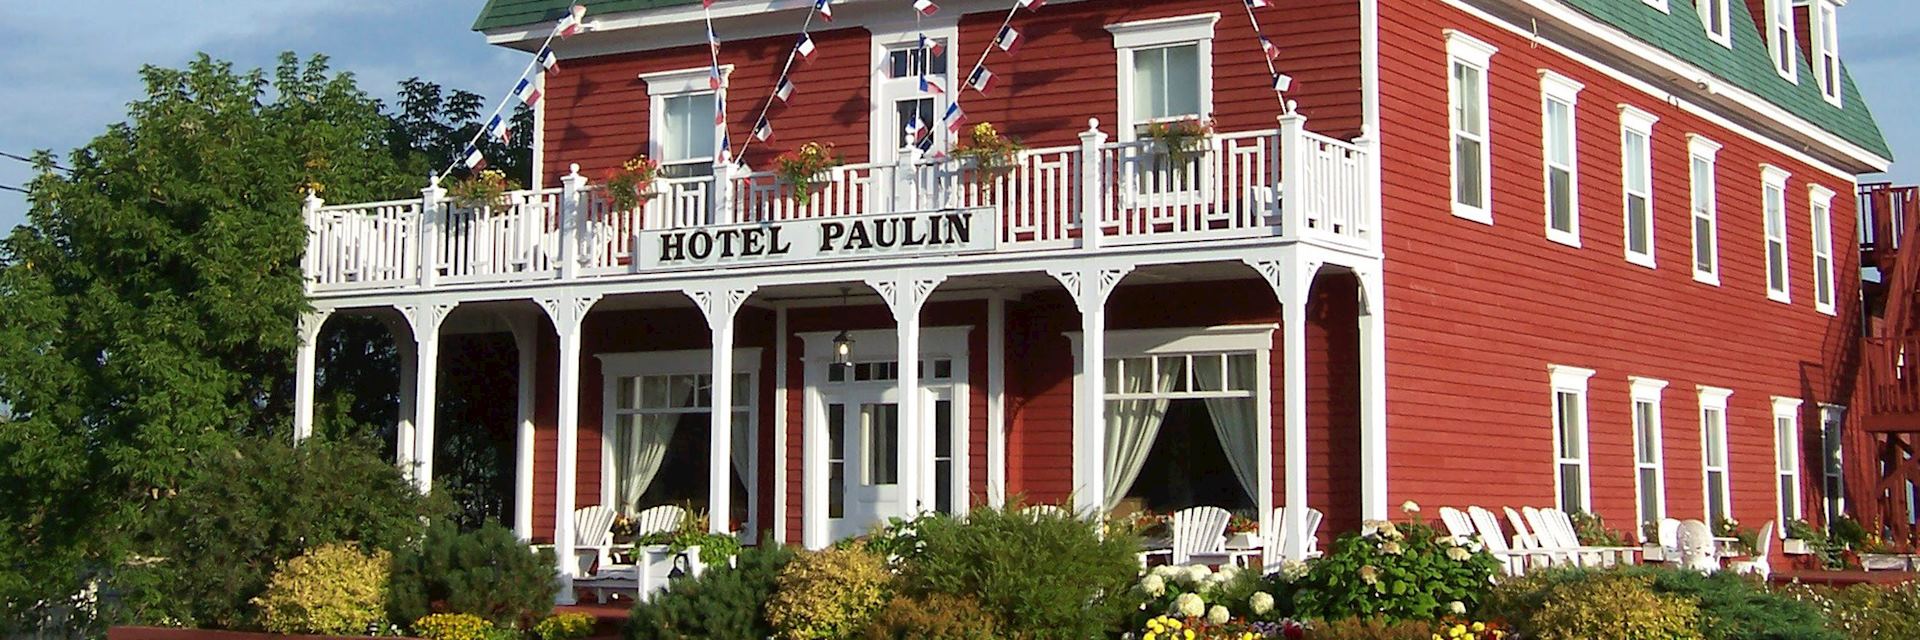 Hotel Paulin